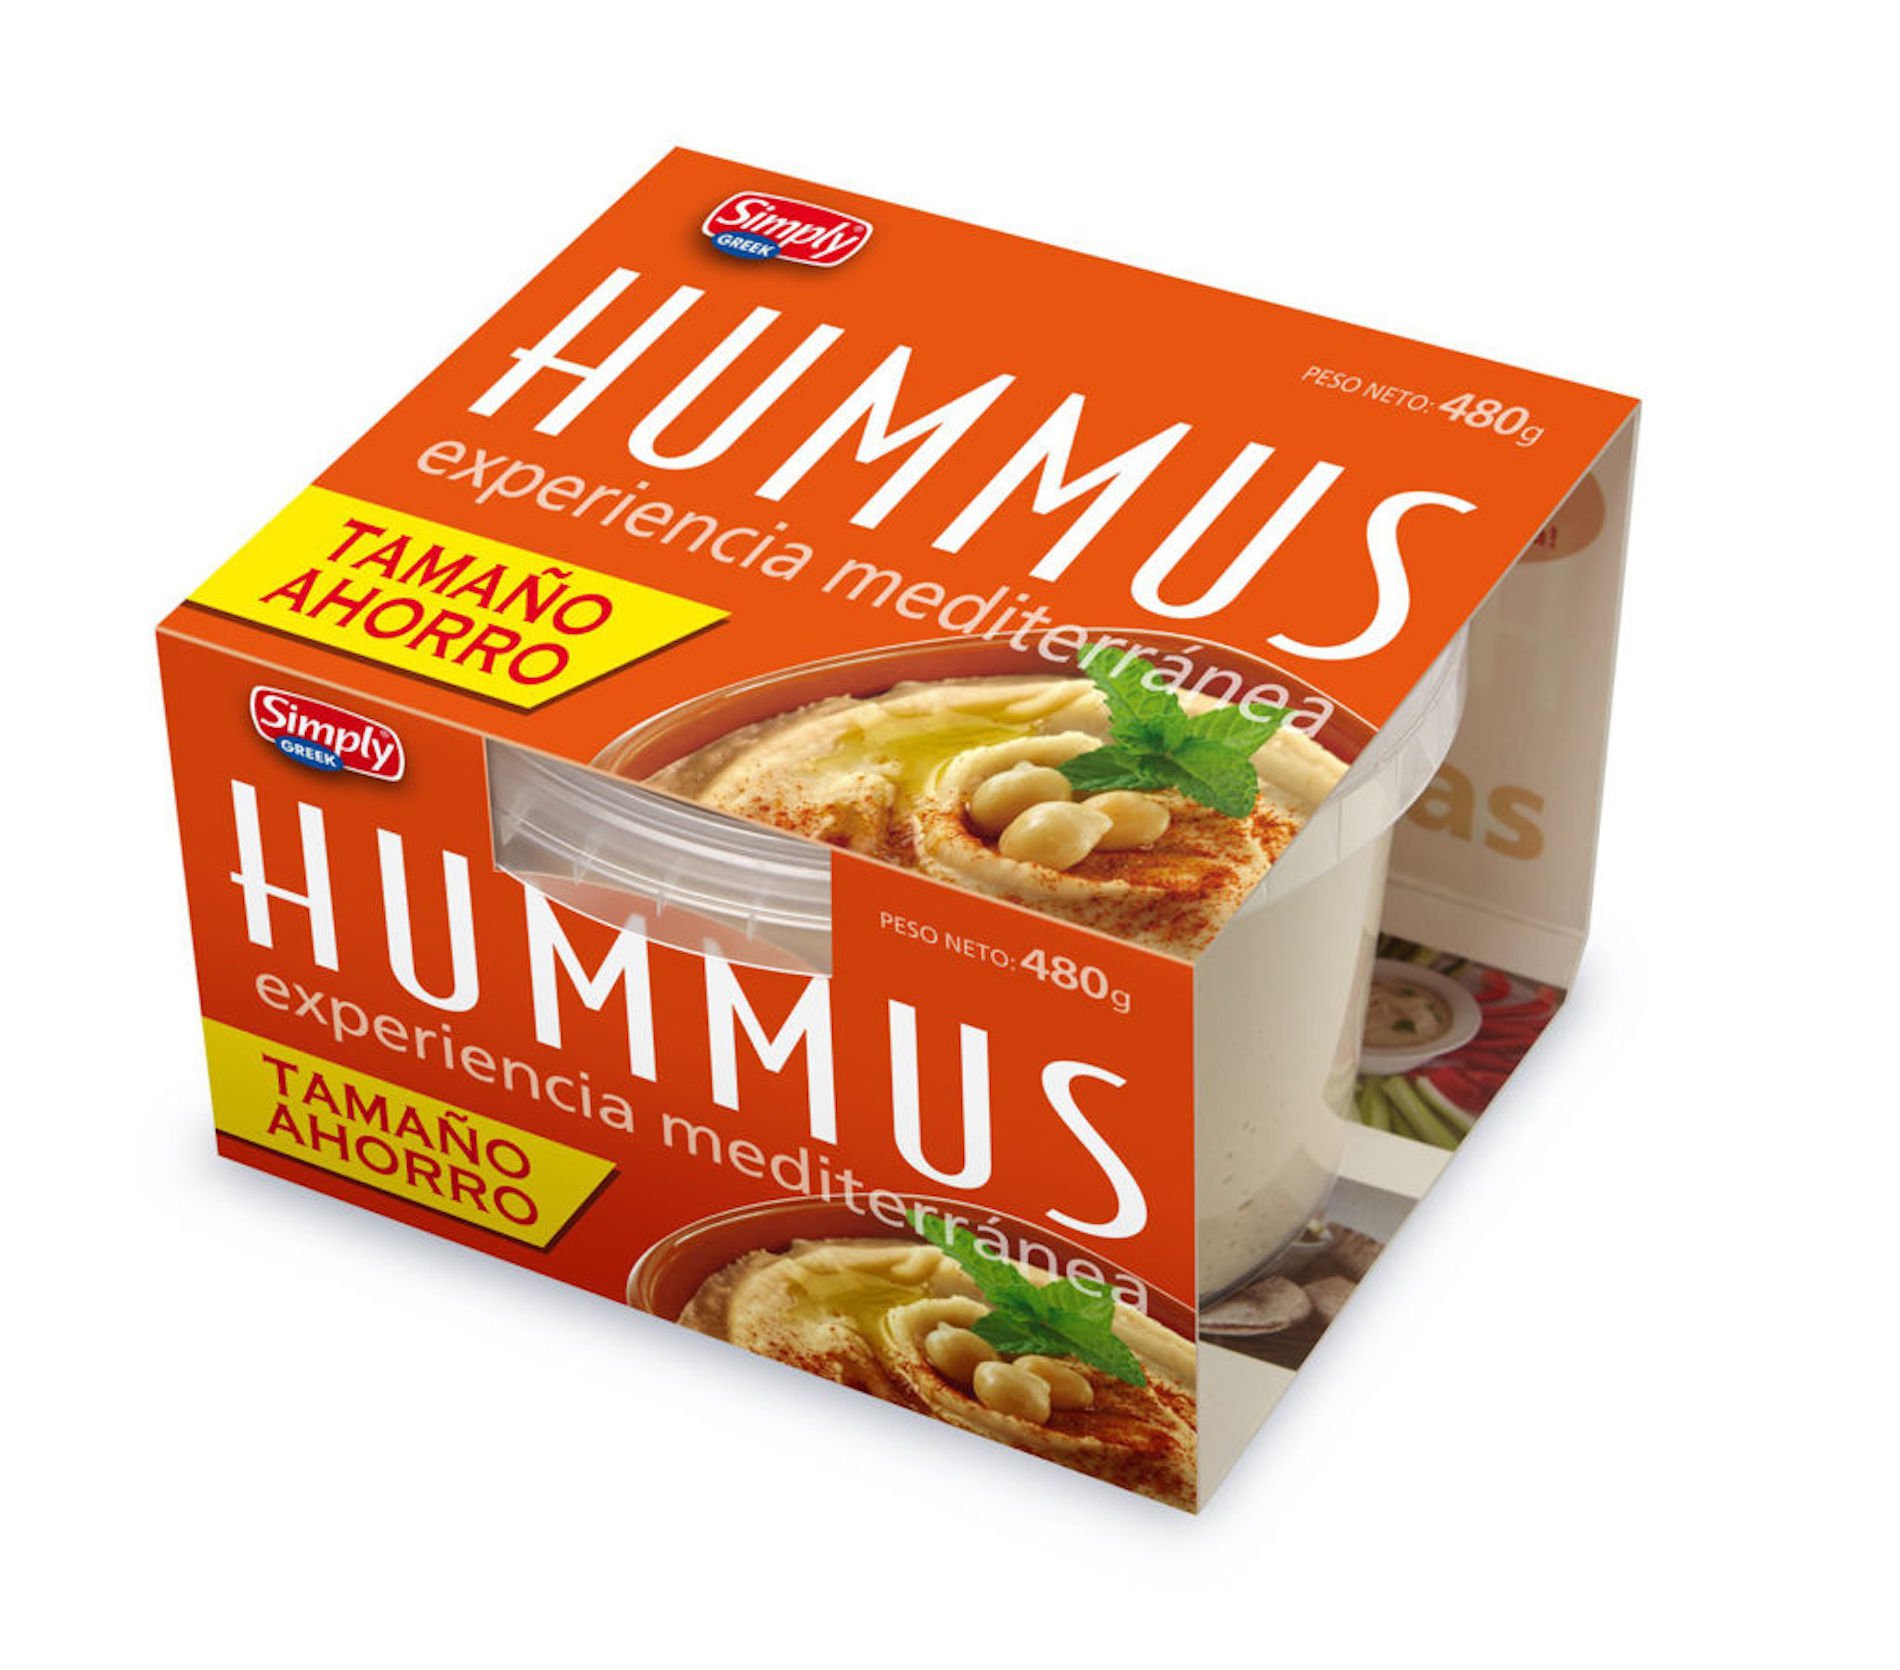 Hummus Mercadona / Mercadona